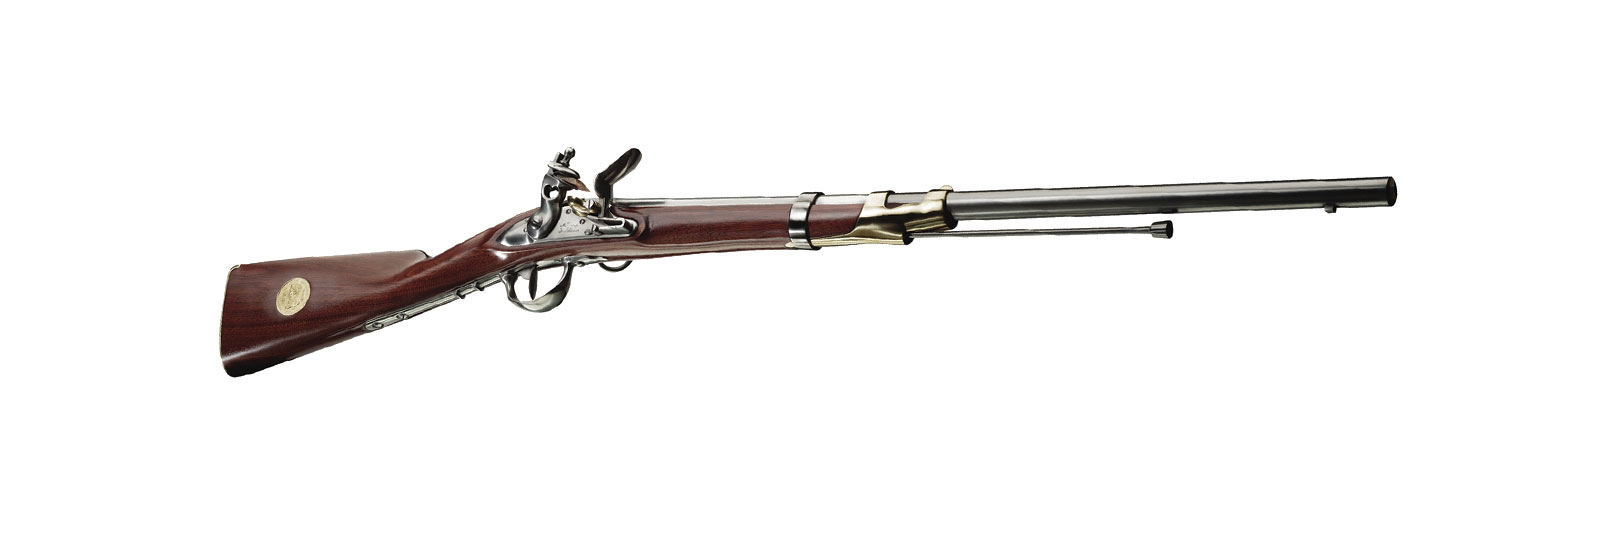 Fucile Ussaro Mod. 1786 commemorativo